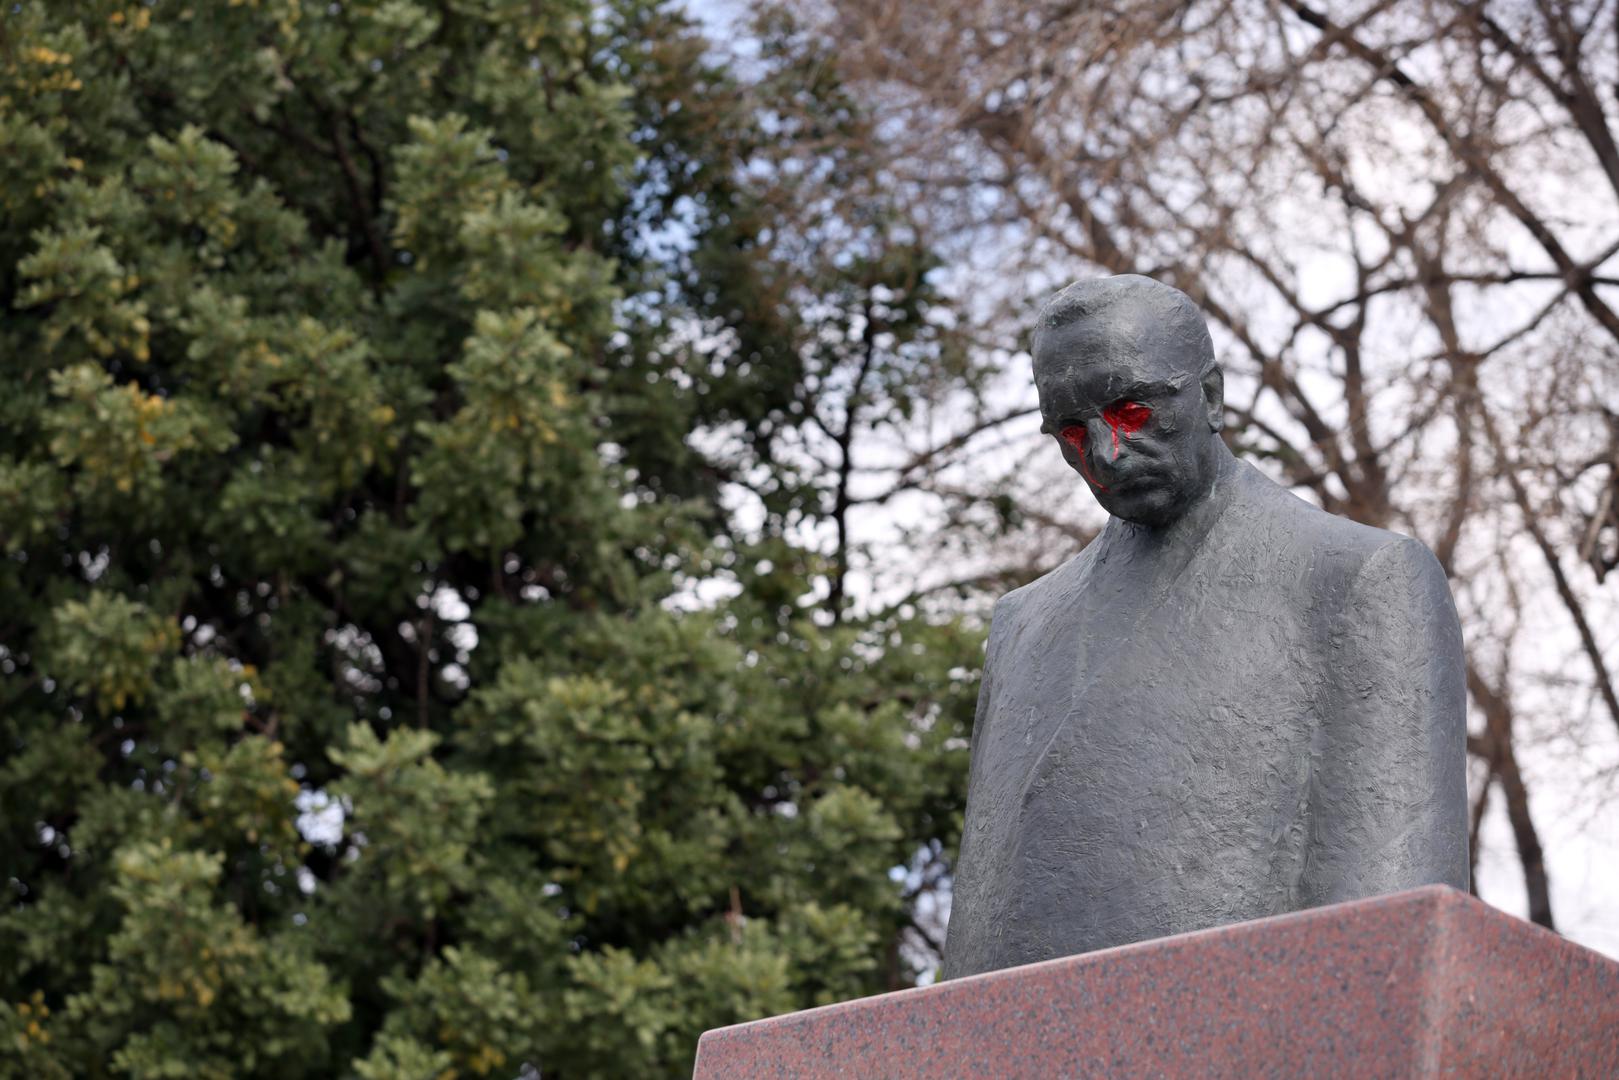 Nakon što se na zagrebačkom spomeniku nacrtan srp i čekić, vandali su spomeniku u Splitu obojili oči u crveno.